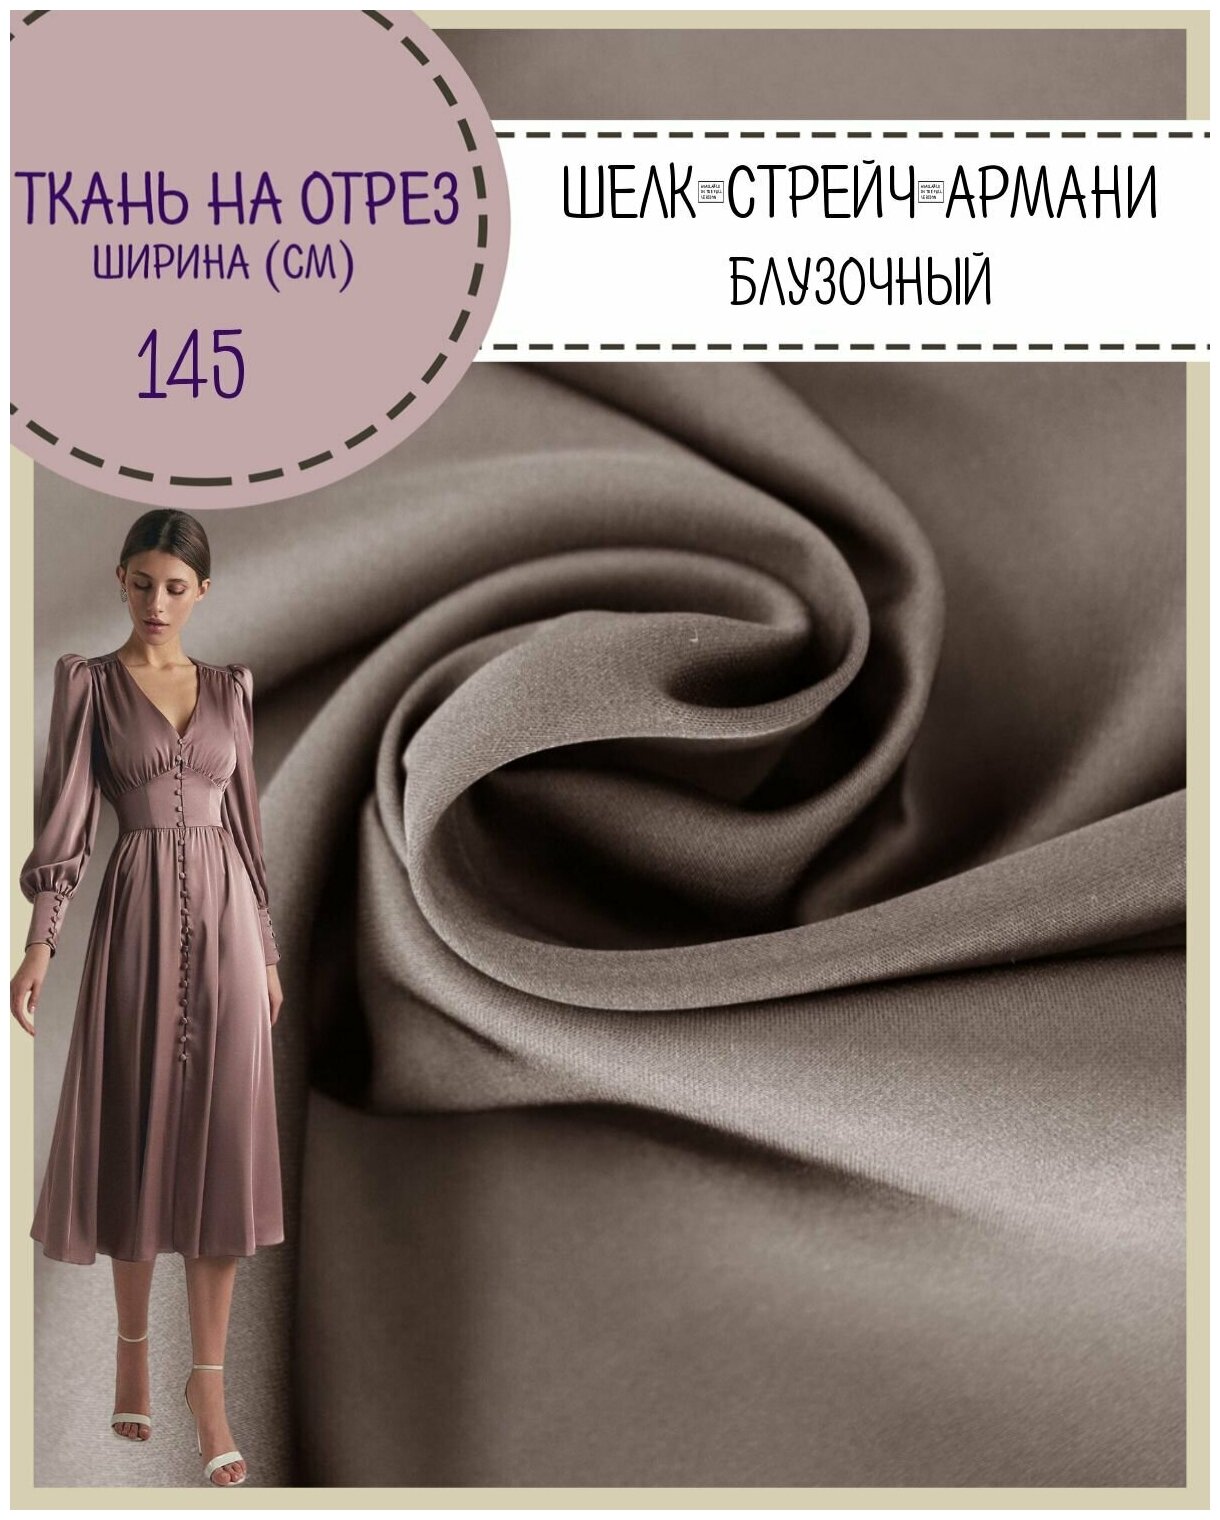 Ткань Шелк "Армани" стрейч/для платья/ блузы, цв. серый, пл. 90 г/кв, ш-145 см, на отрез, цена за пог. метр